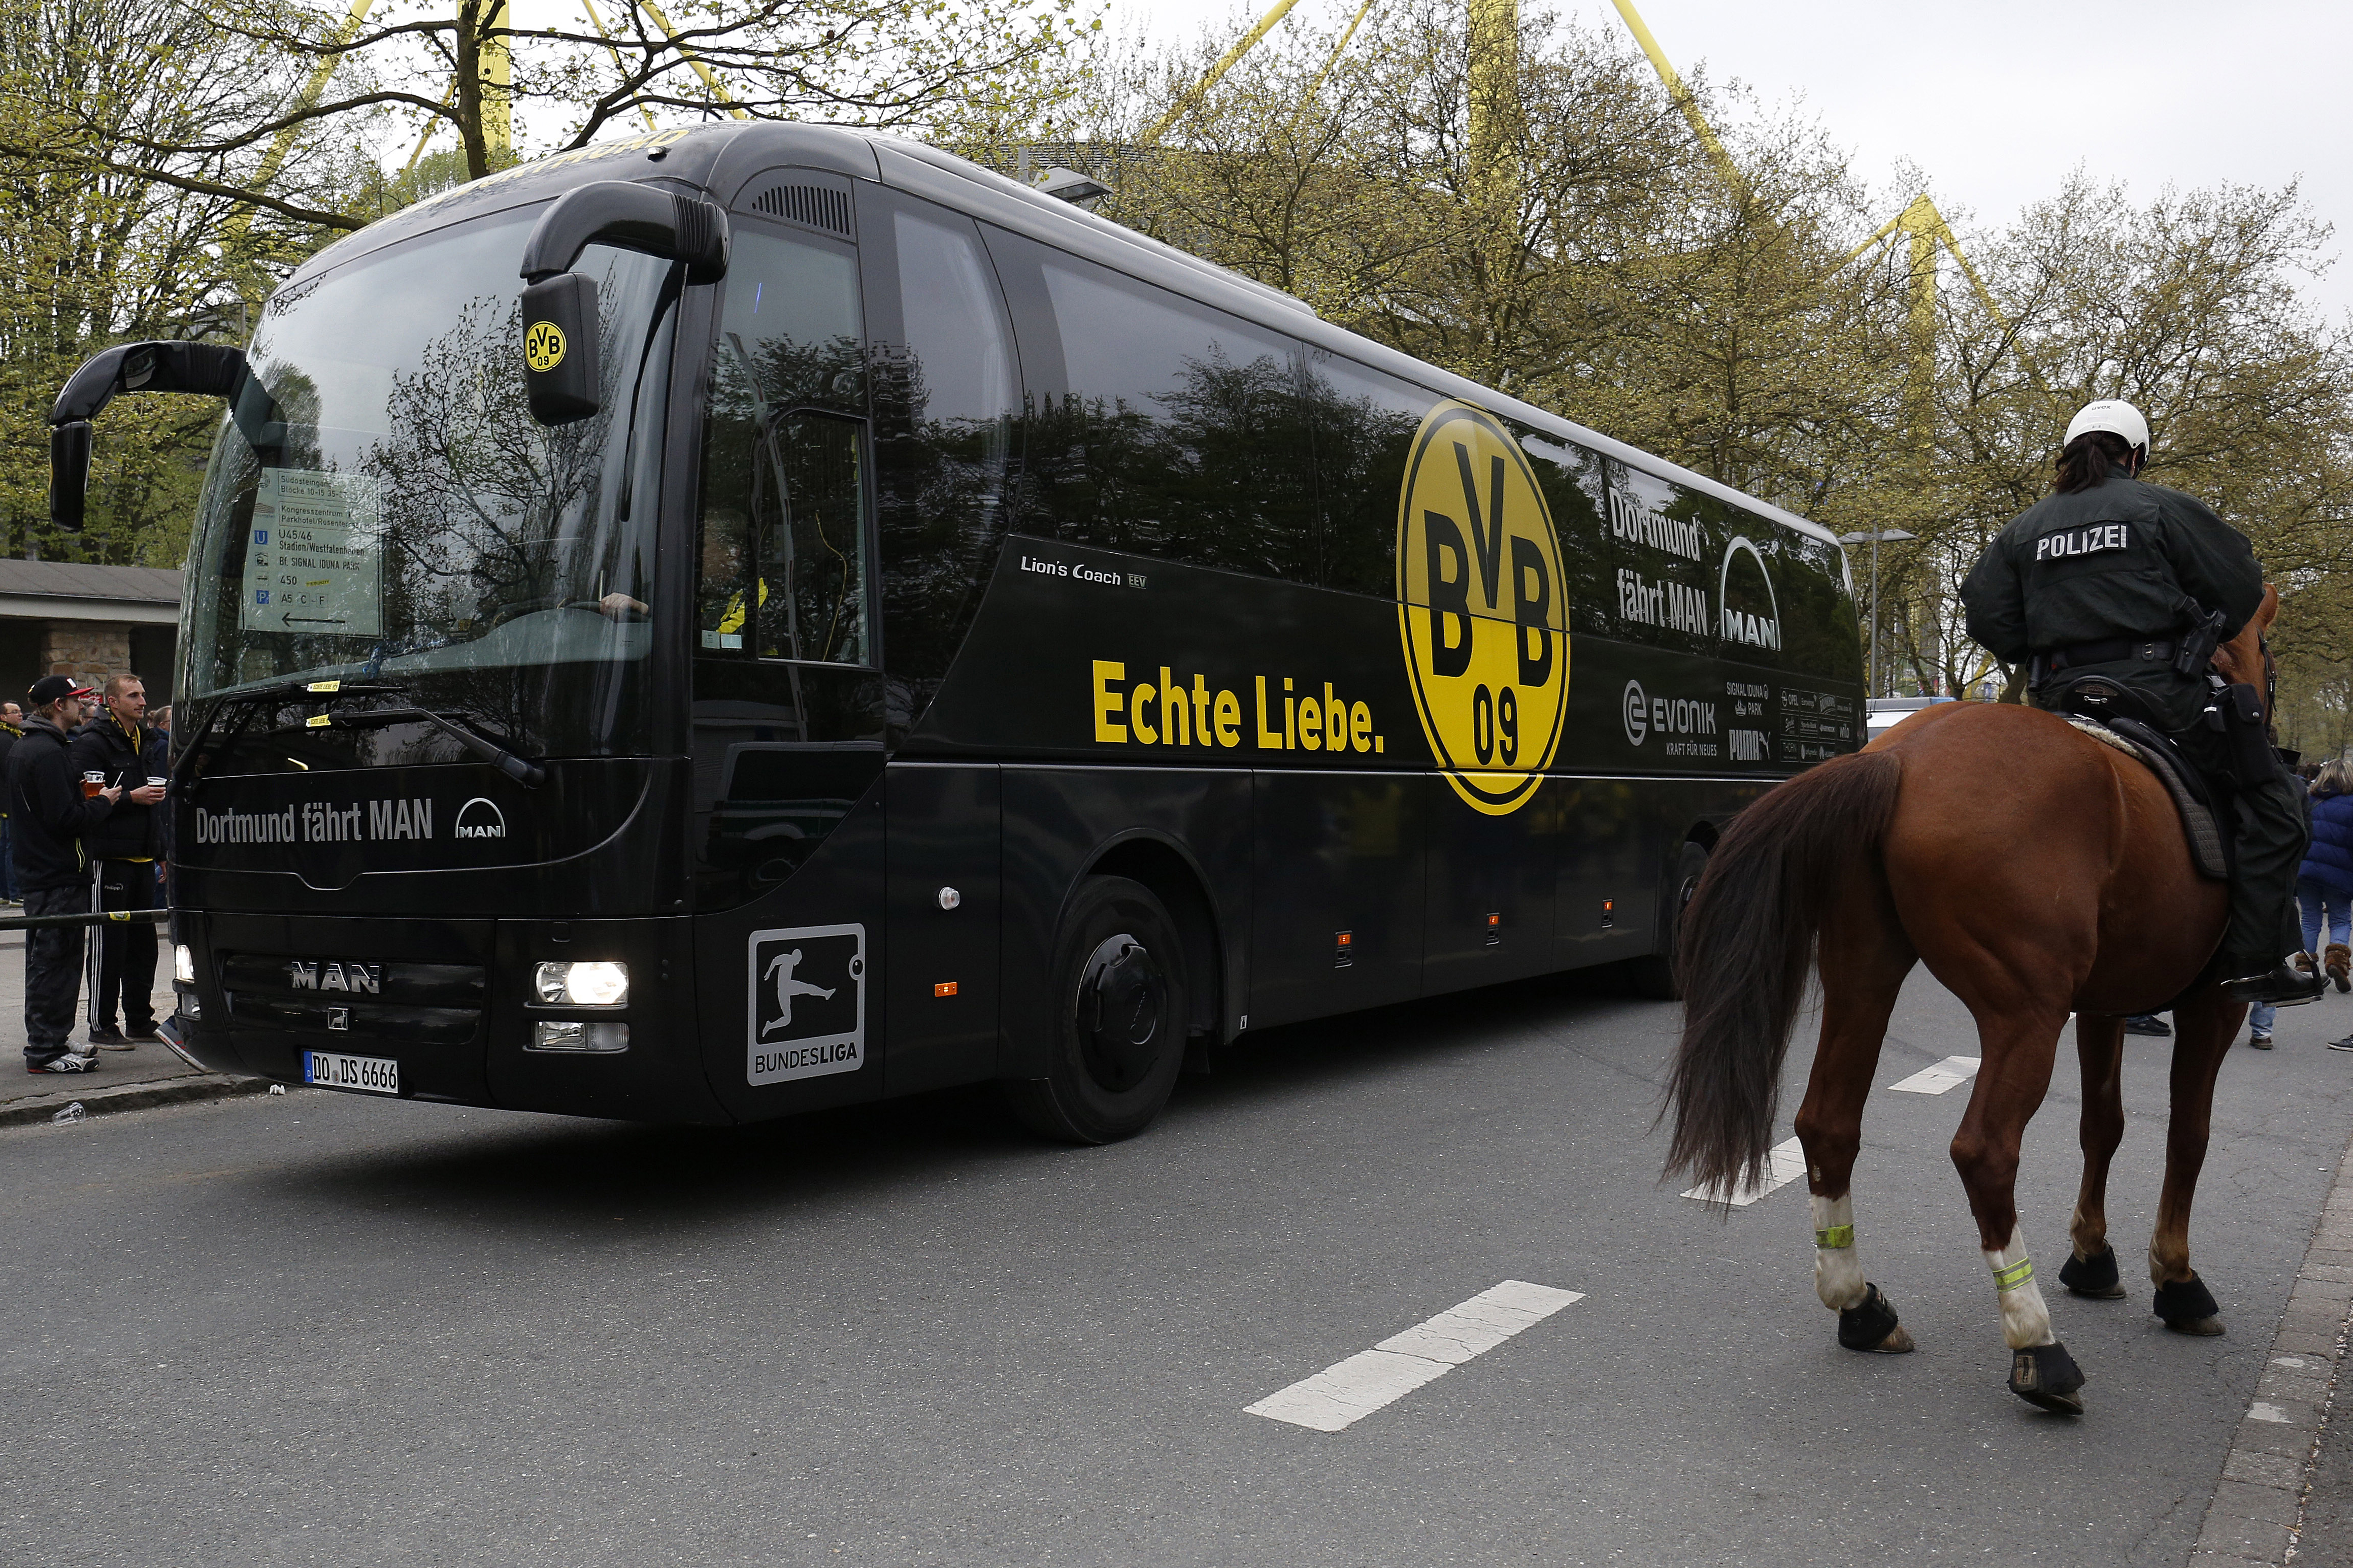 Beismerő vallomást tett a férfi, aki megpróbálta felrobbantani a Borussia Dortmund csapatát szállító buszt 